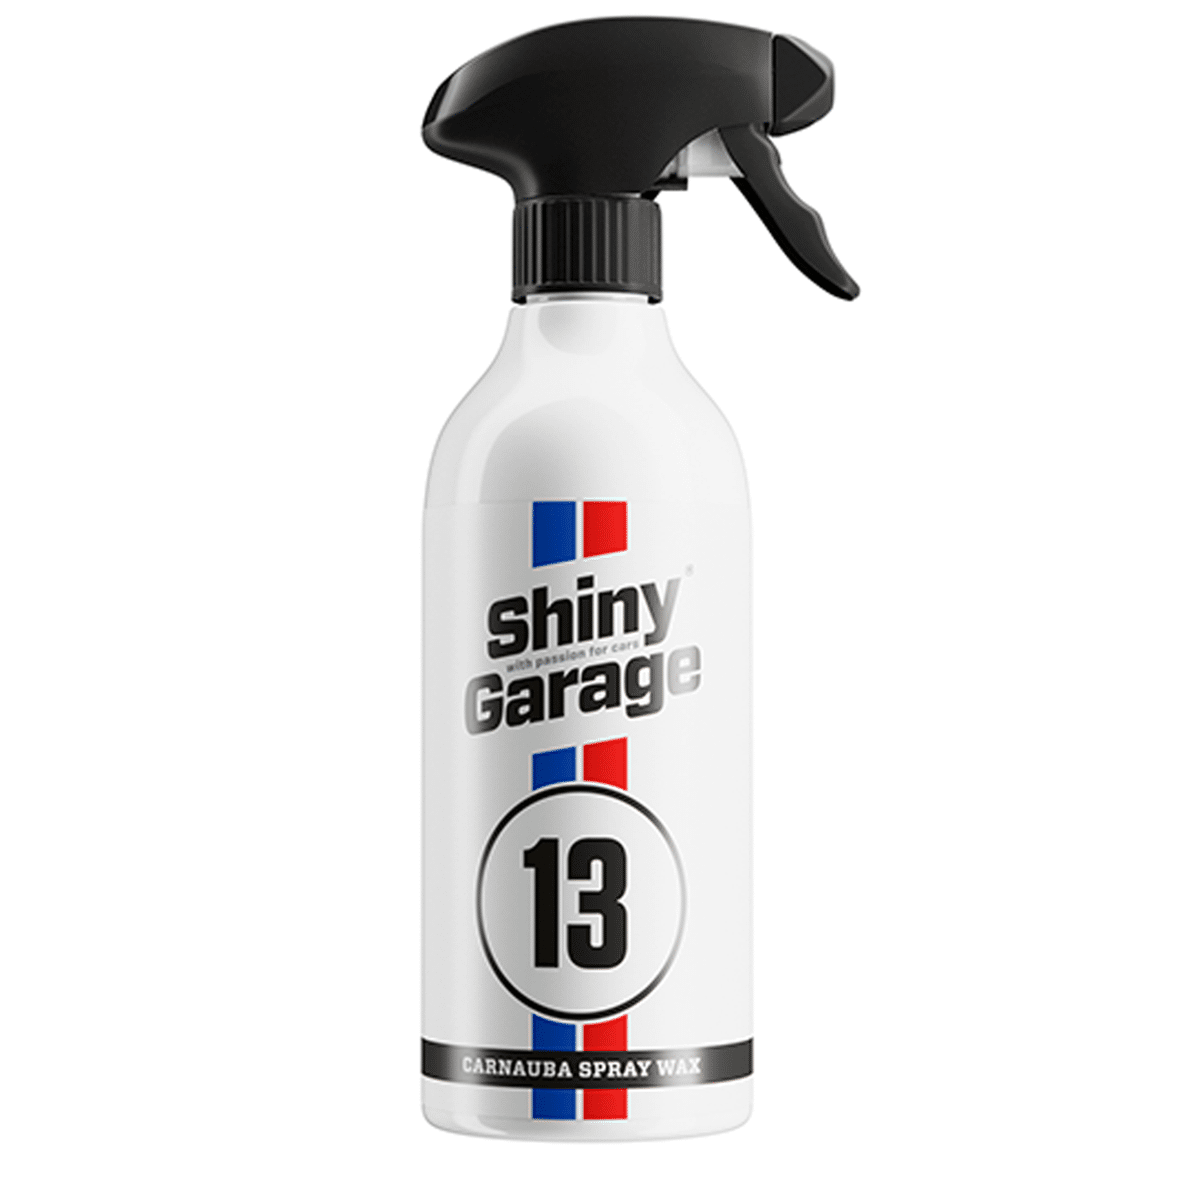 SHINY GARAGE Carnauba Spray Wax 500ml Wosk z Carnaubą w Spray'u